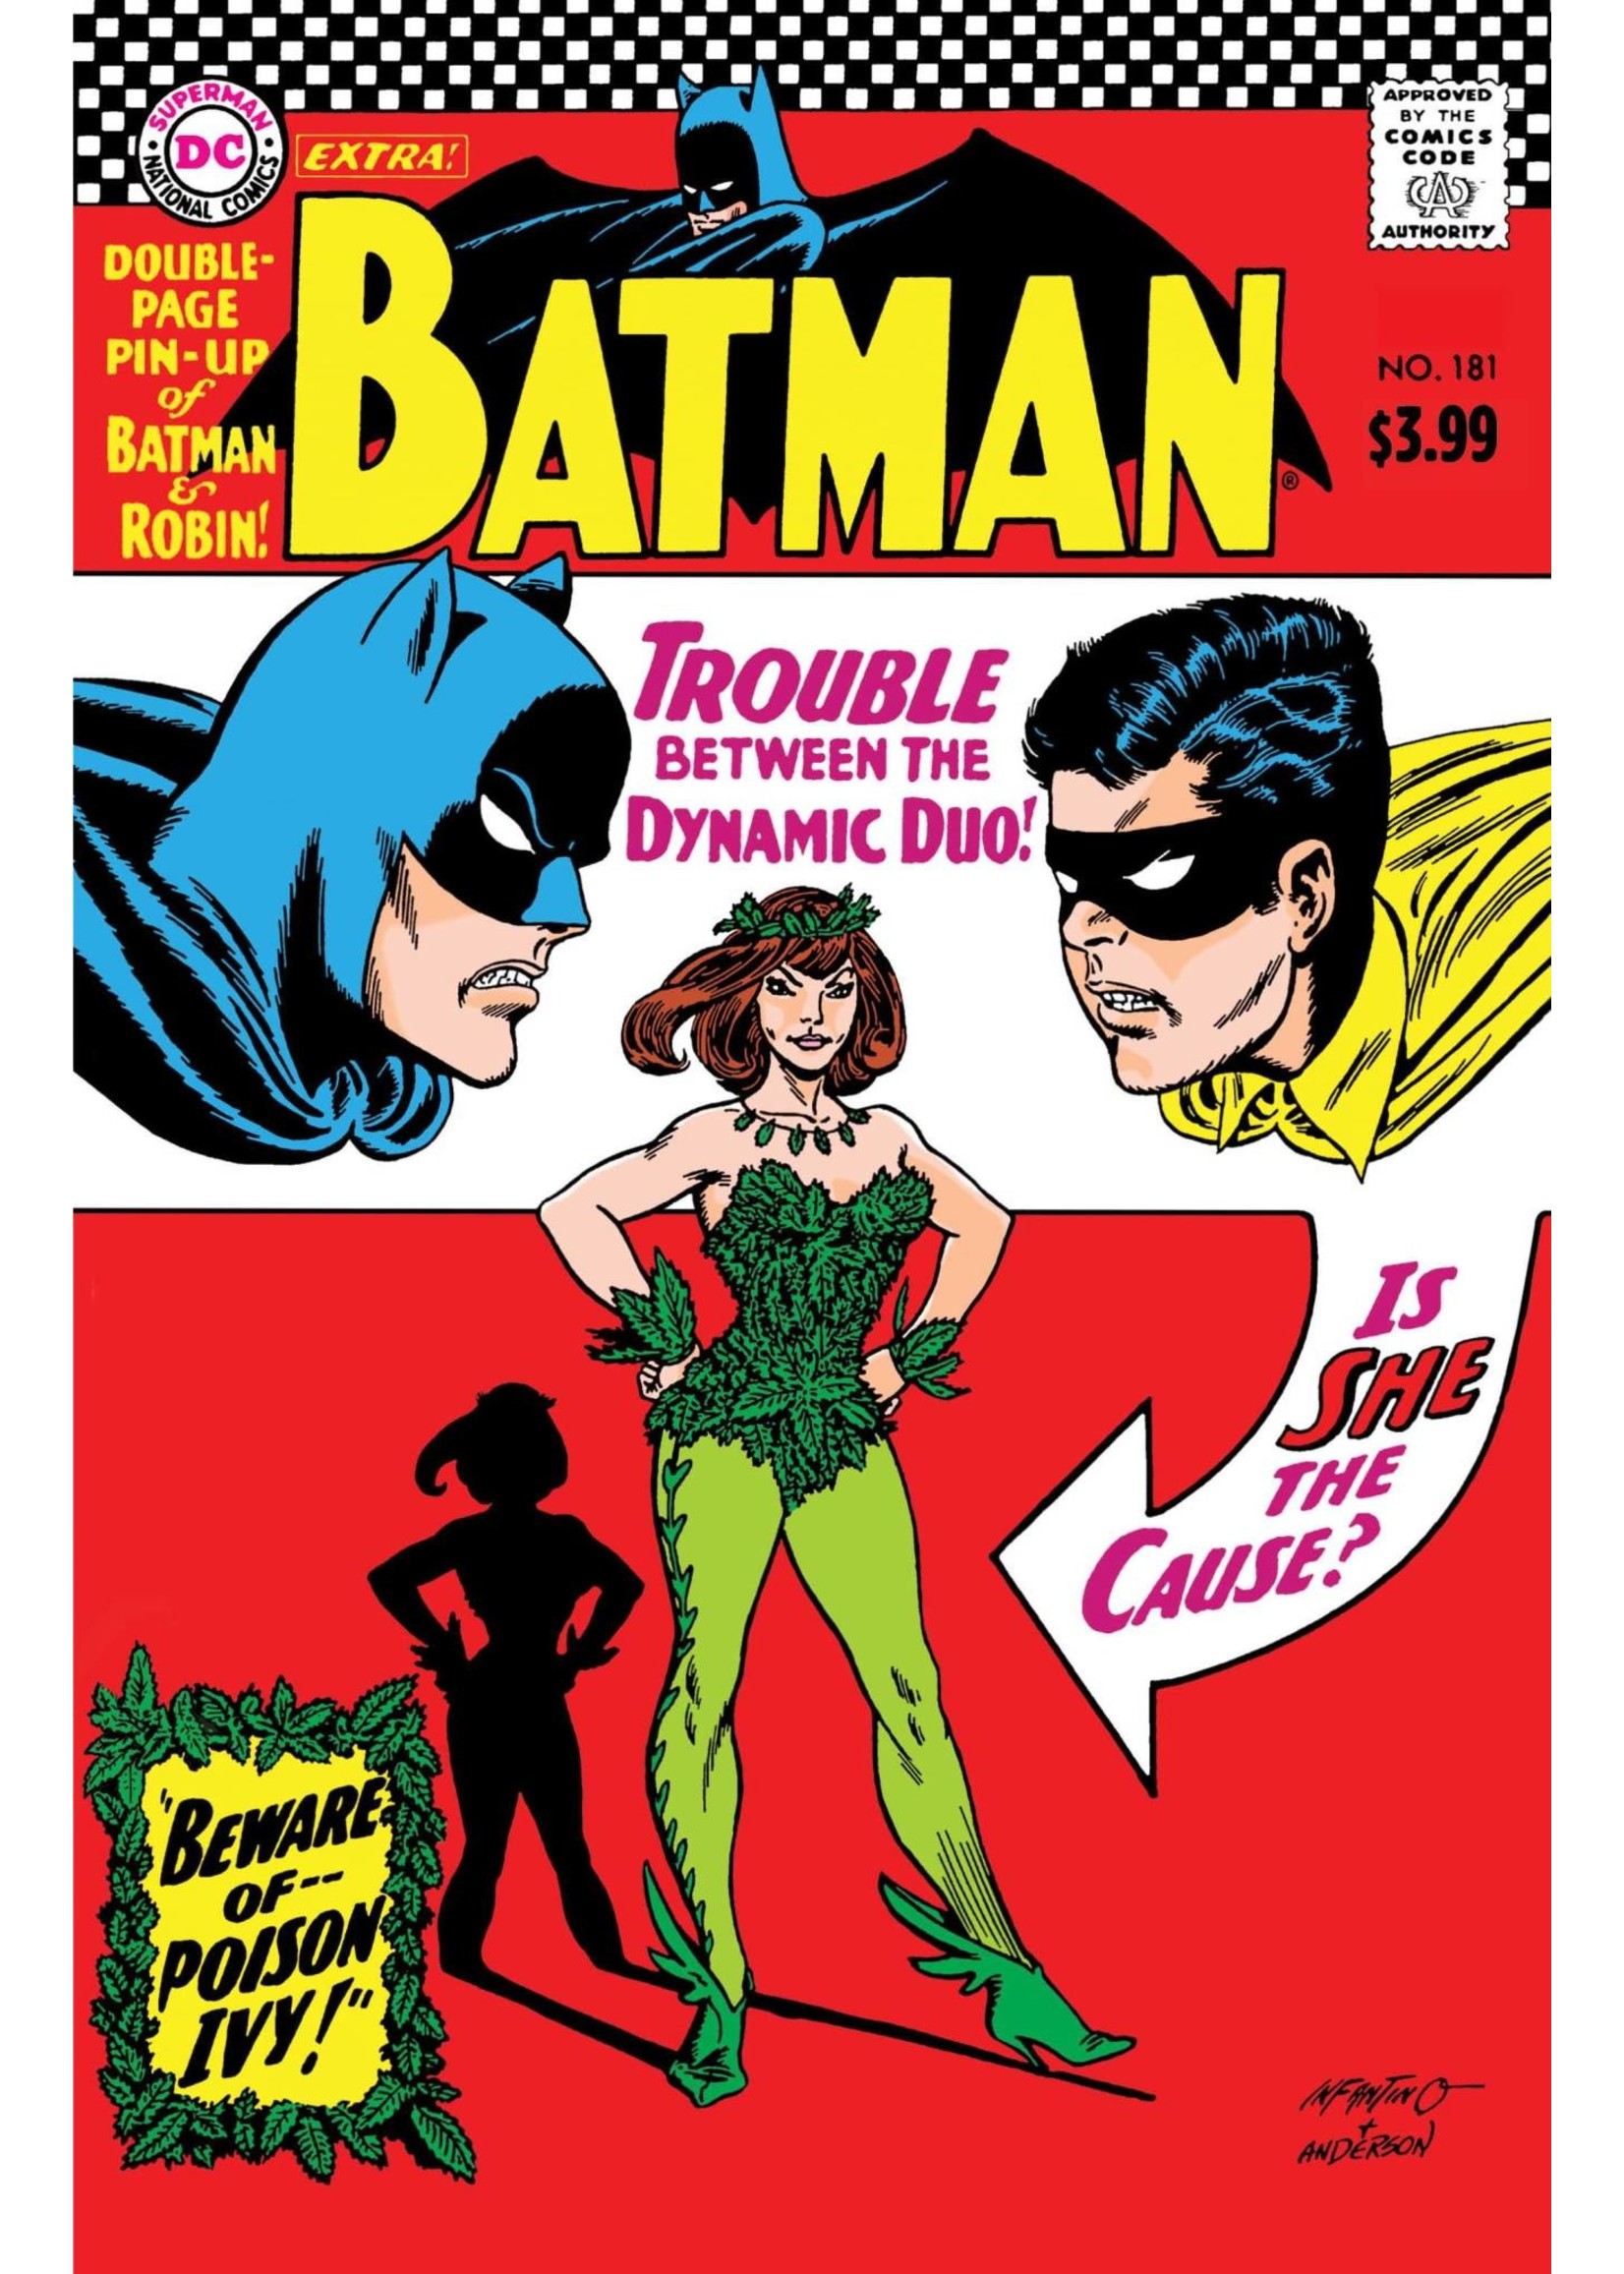 DC COMICS BATMAN #181 FACSIMILE EDITION